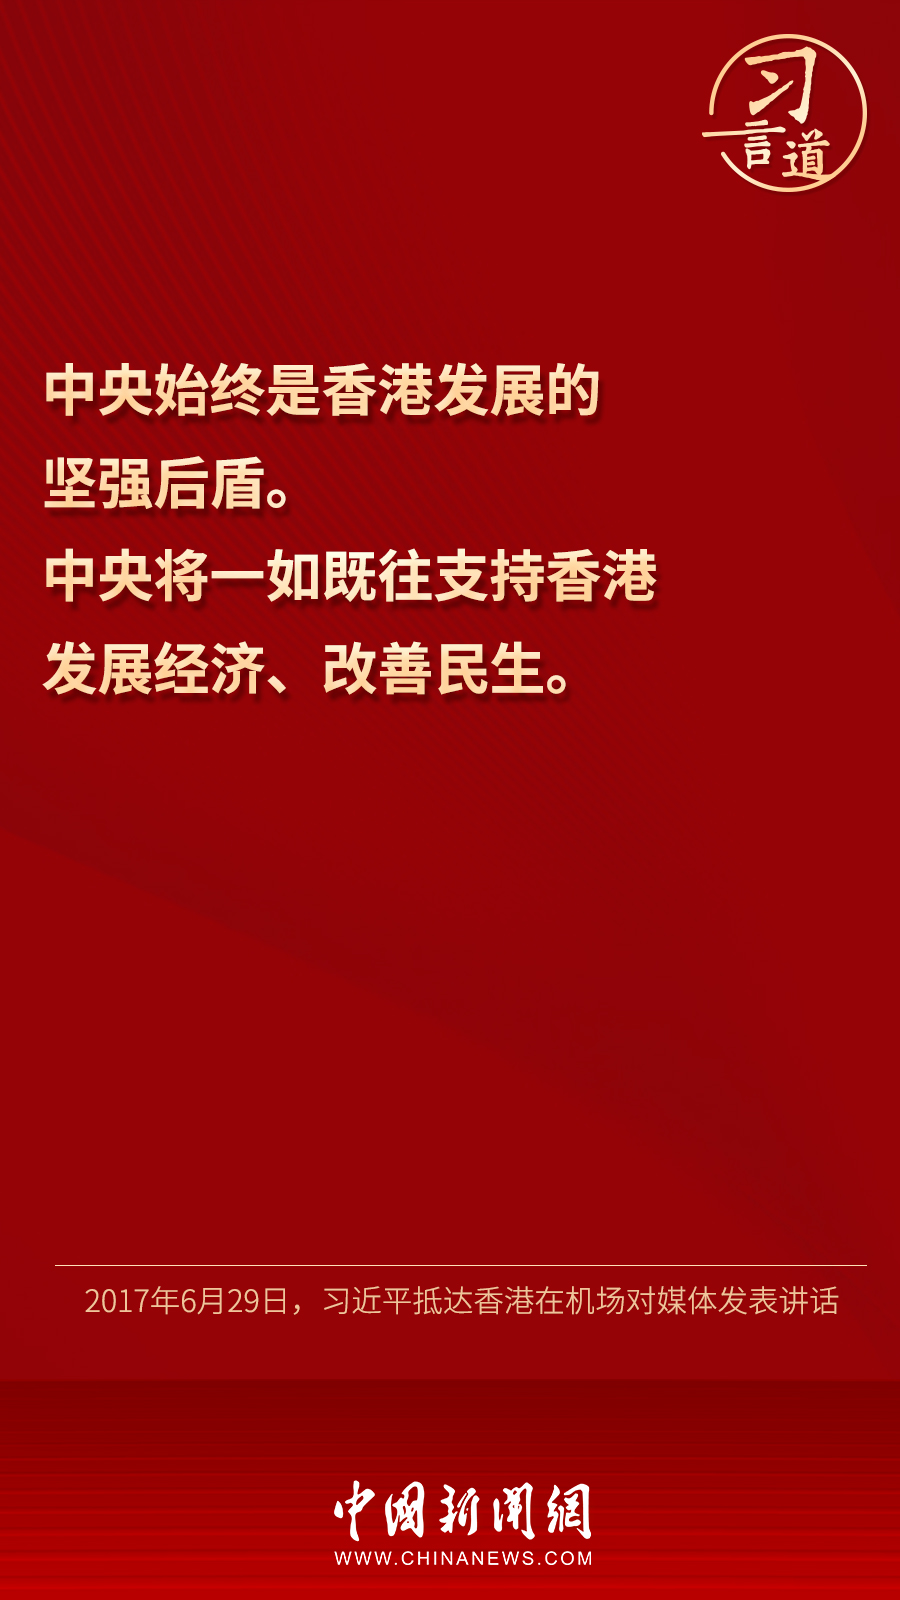 【明珠耀香江】习言道丨“真诚希望香港好、香港同胞好”